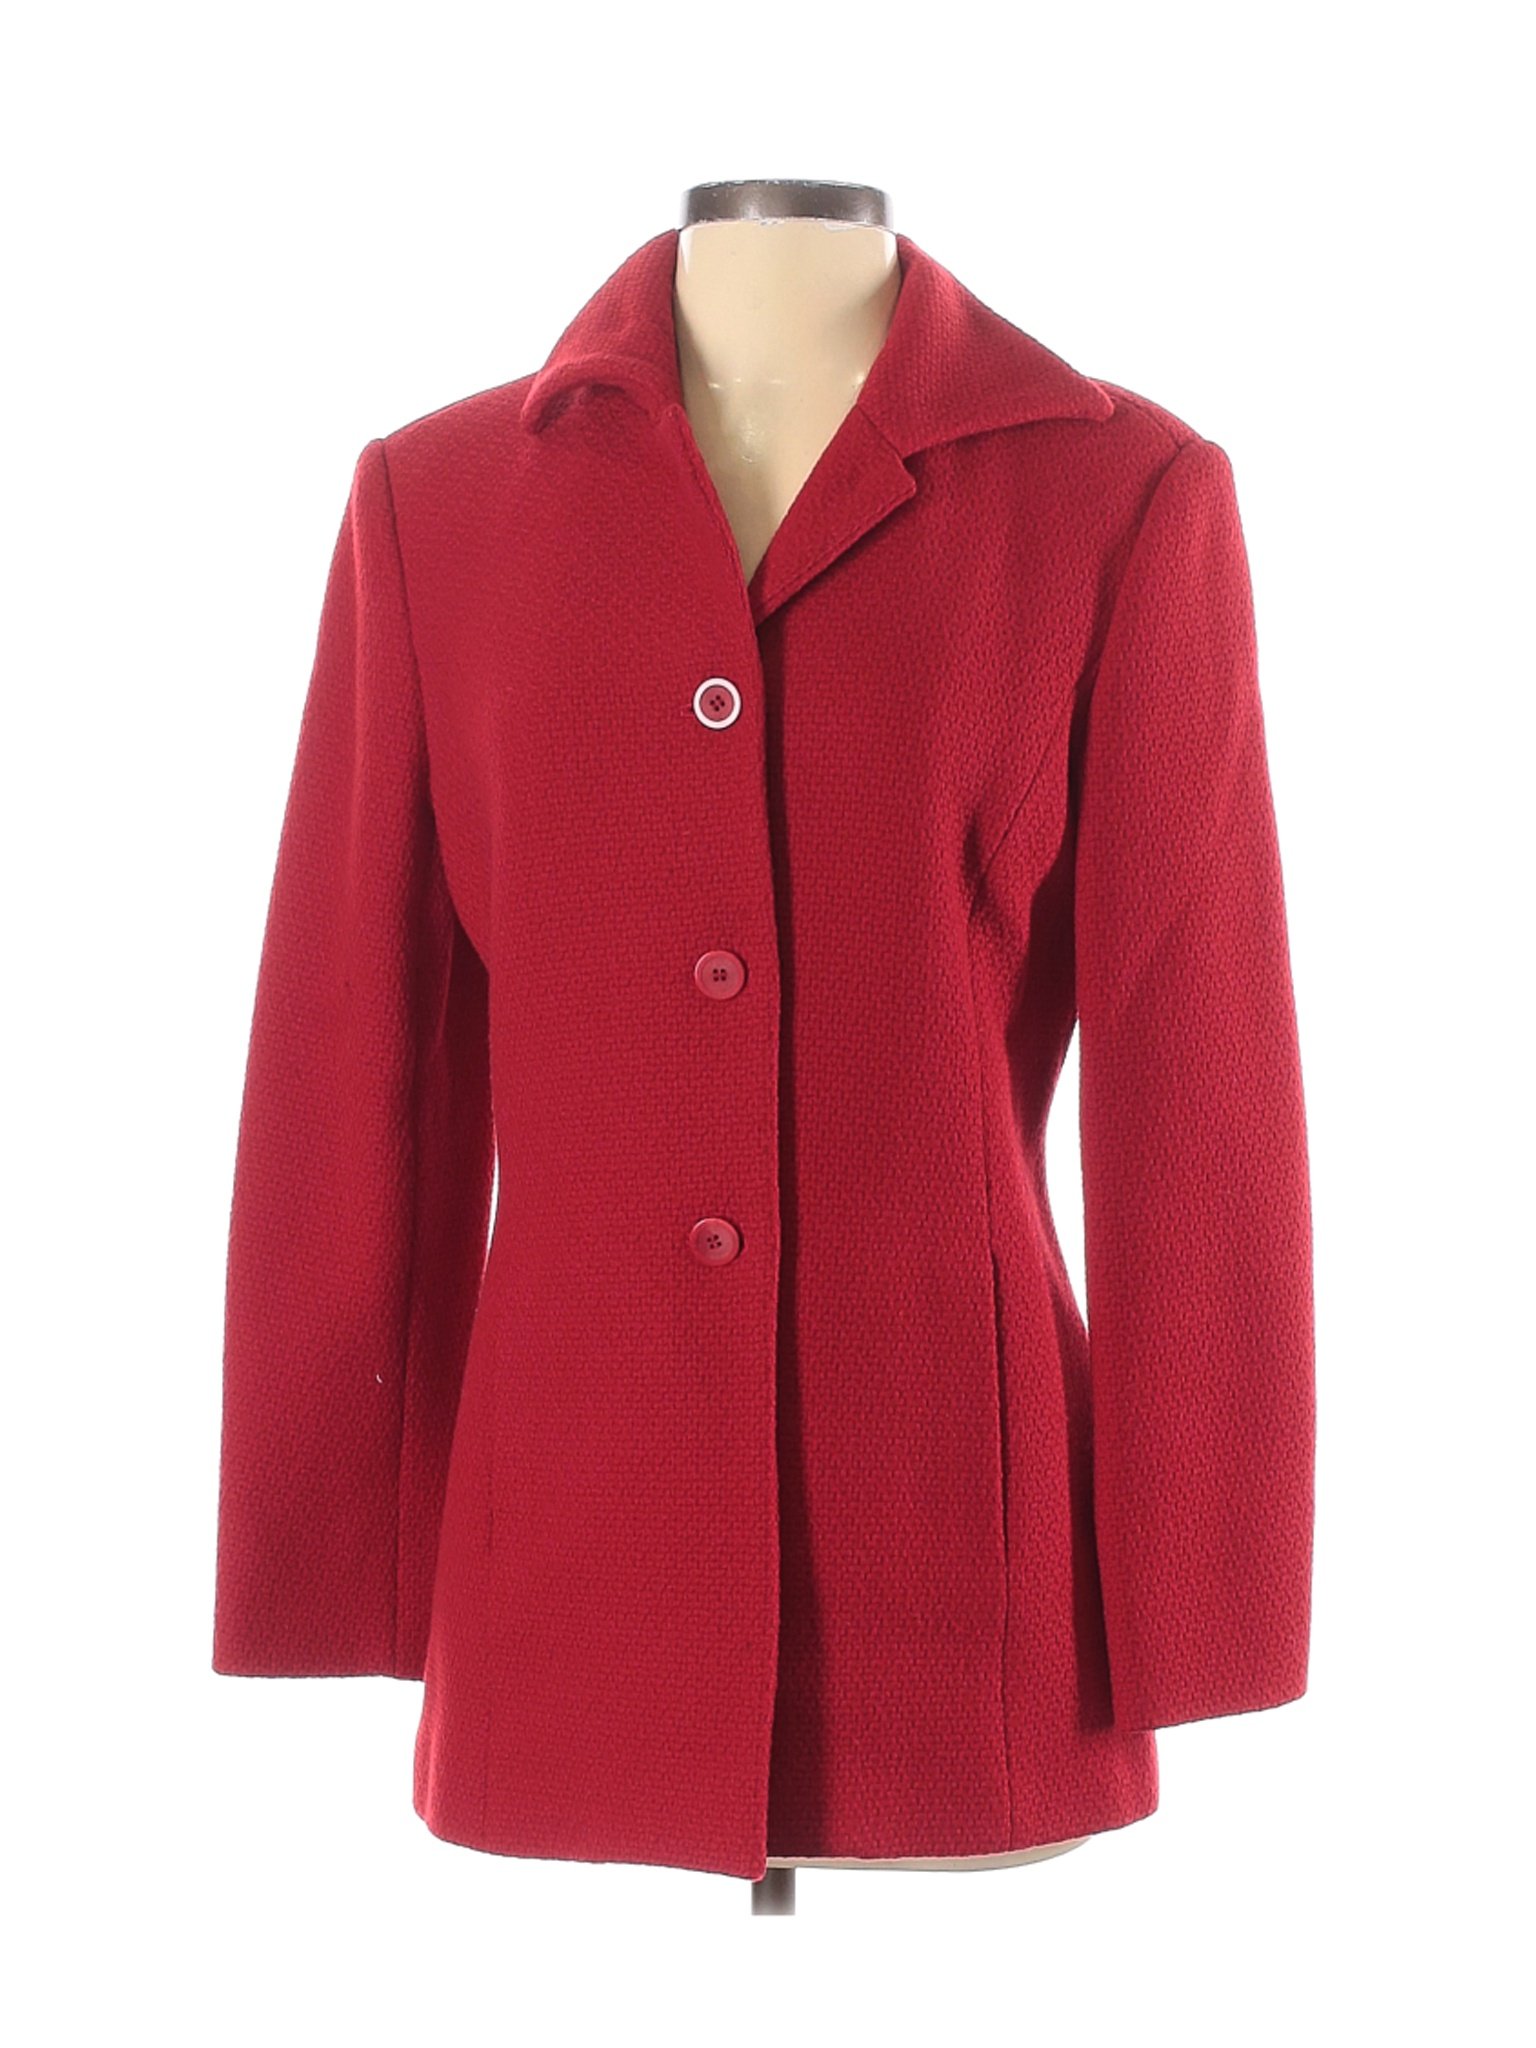 Talbots Women Red Wool Coat 4 | eBay